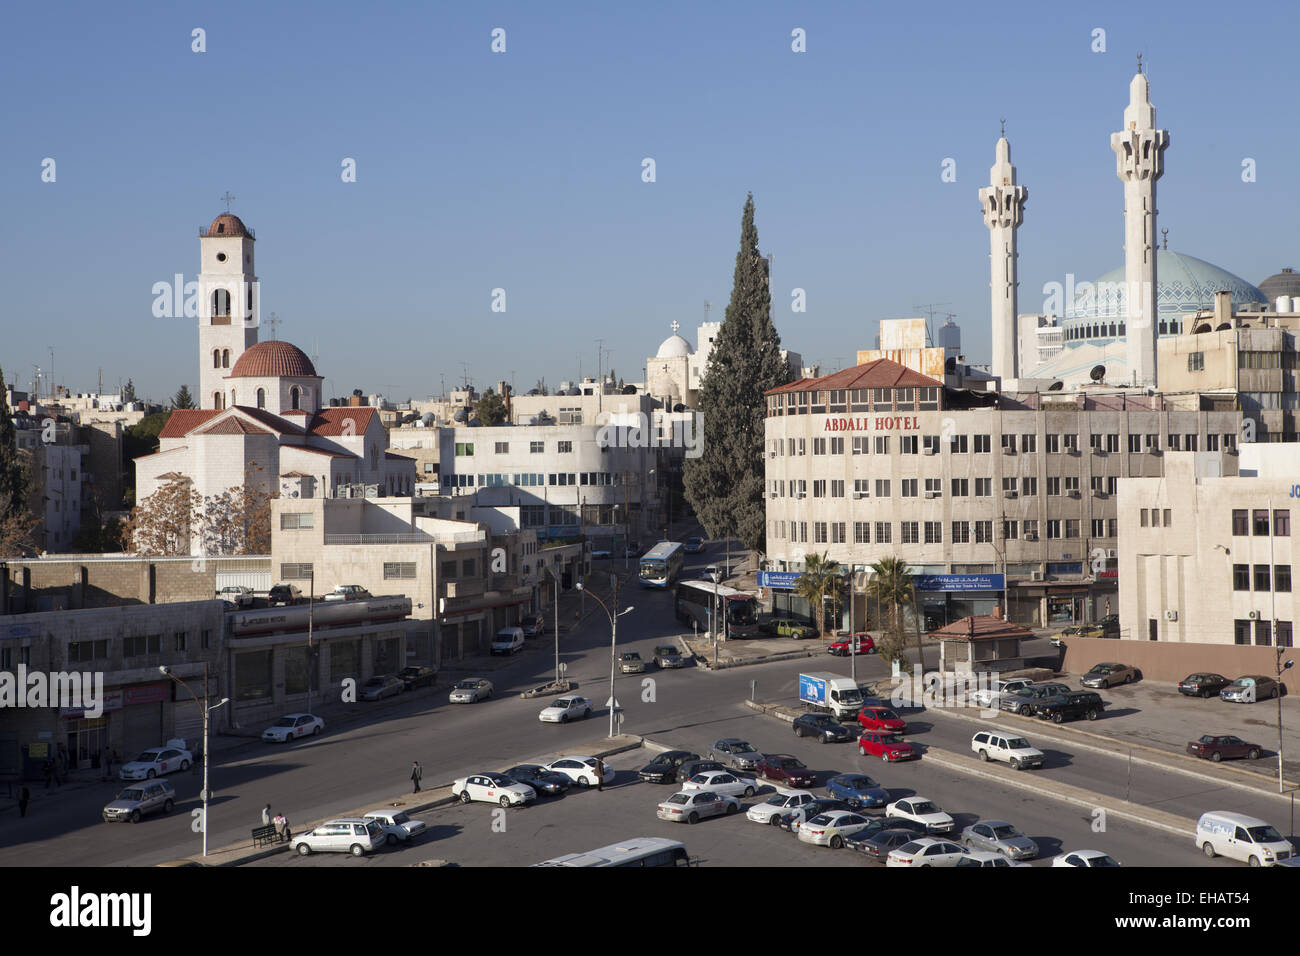 King Abdullah I Mosque, Amman, Jordan Stock Photo